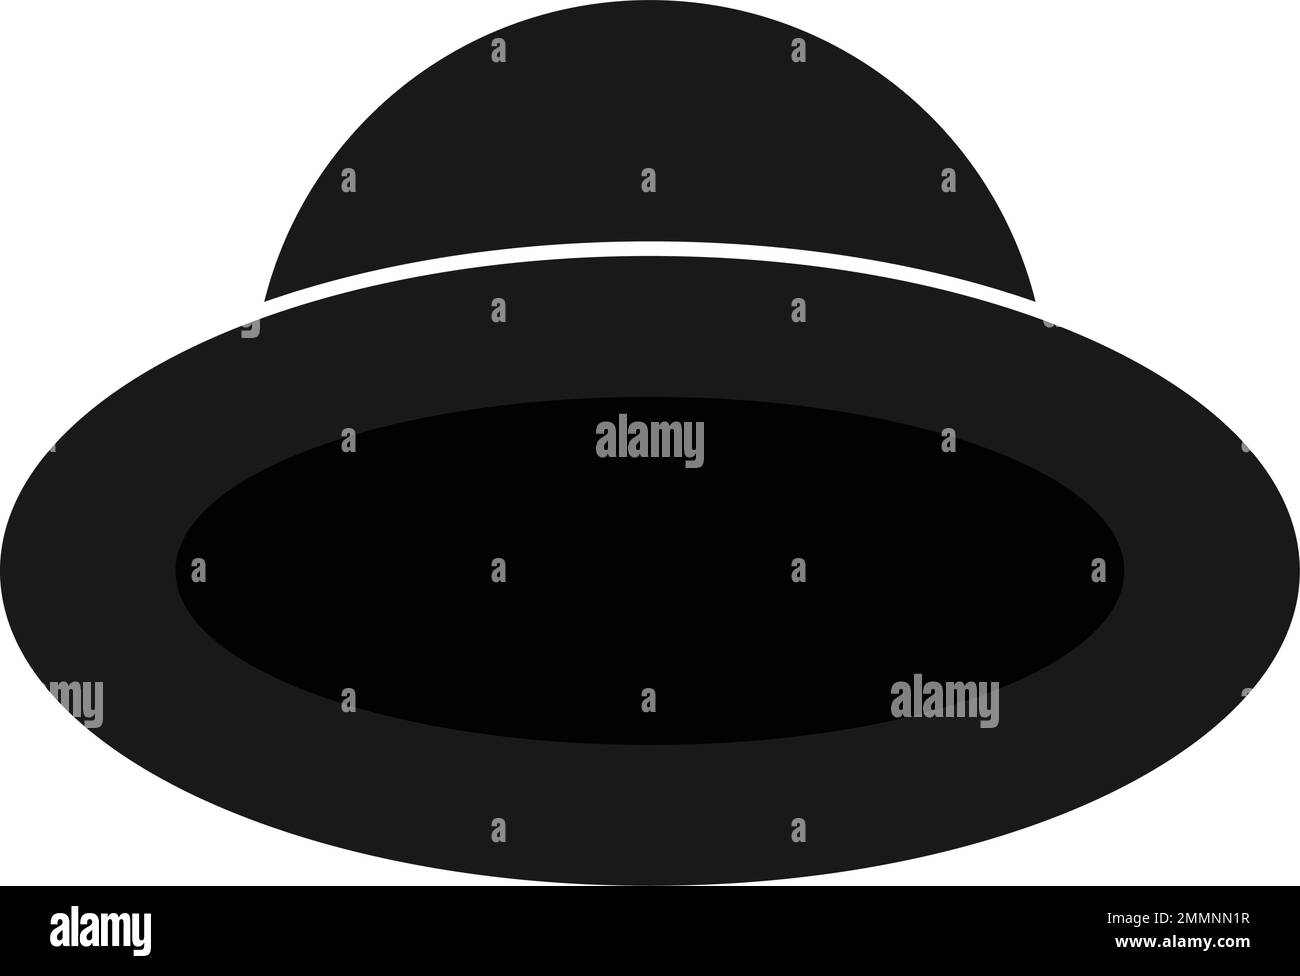 black hat logo vektor template Stock Vector